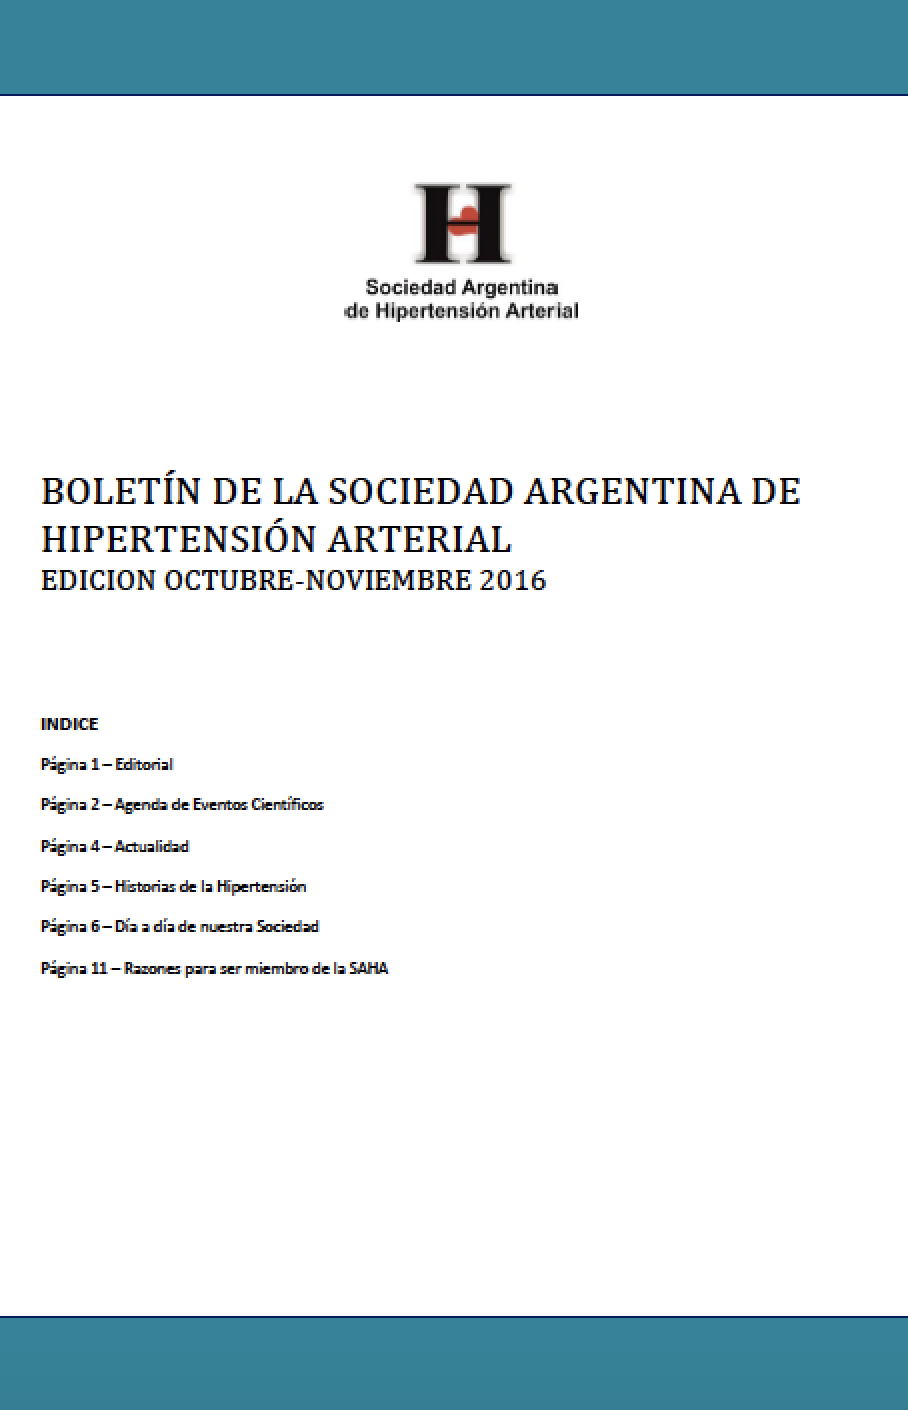 Boletín Periódico Sociedad Argentina de Hipertensión Arterial Diciembre 2015 - Enero 2016